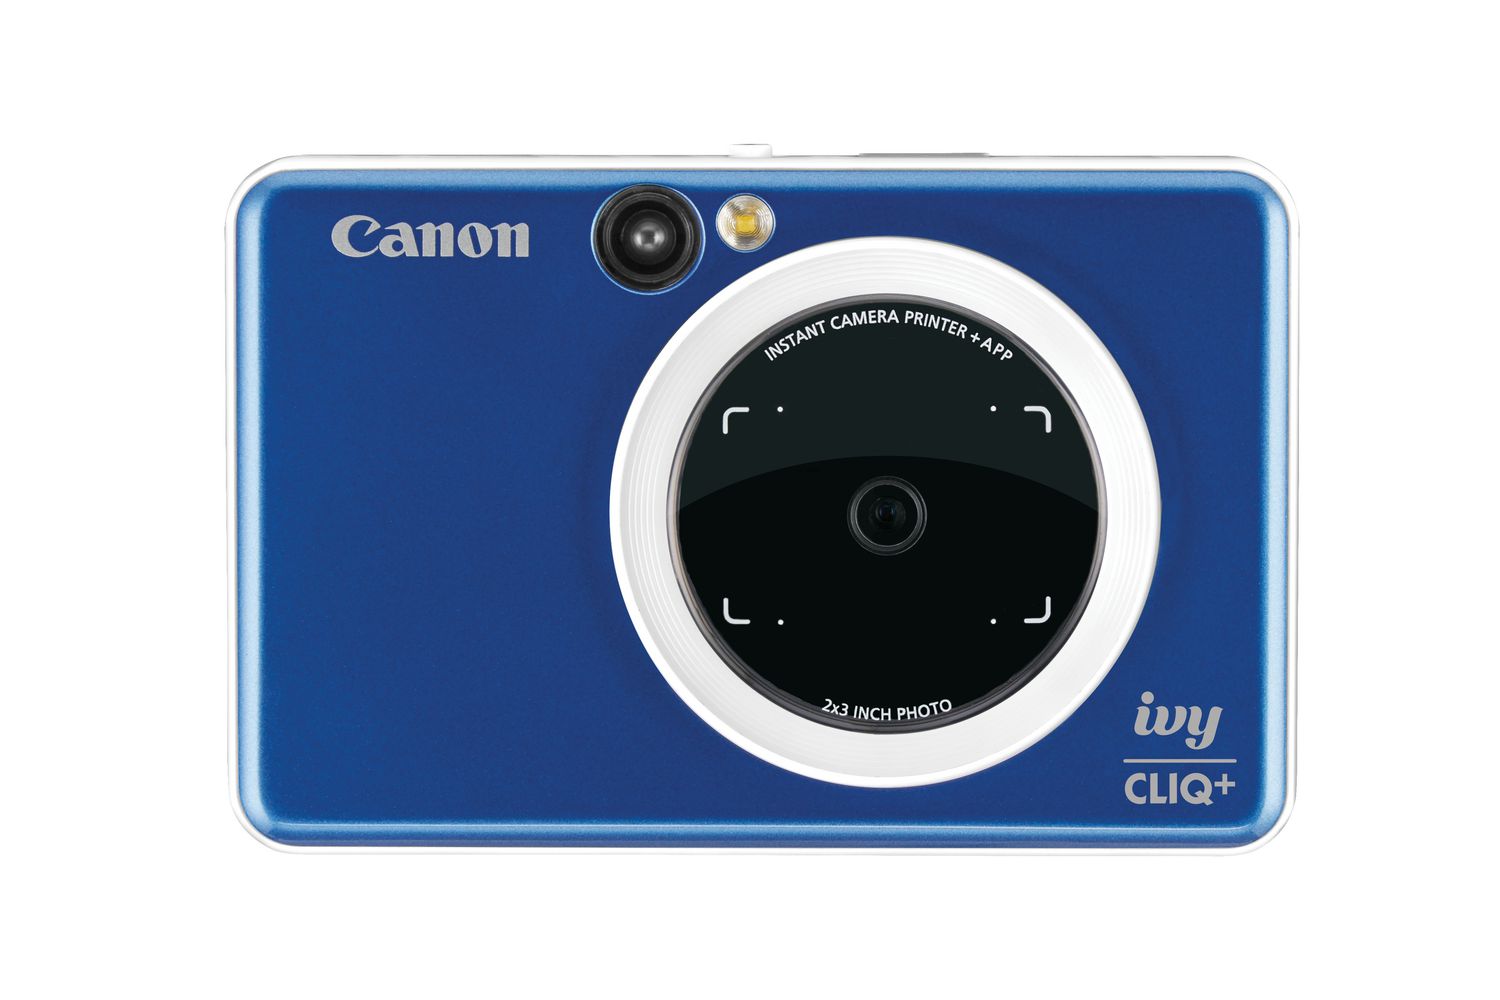 Canon IVY Cliq+ Instant Film Camera